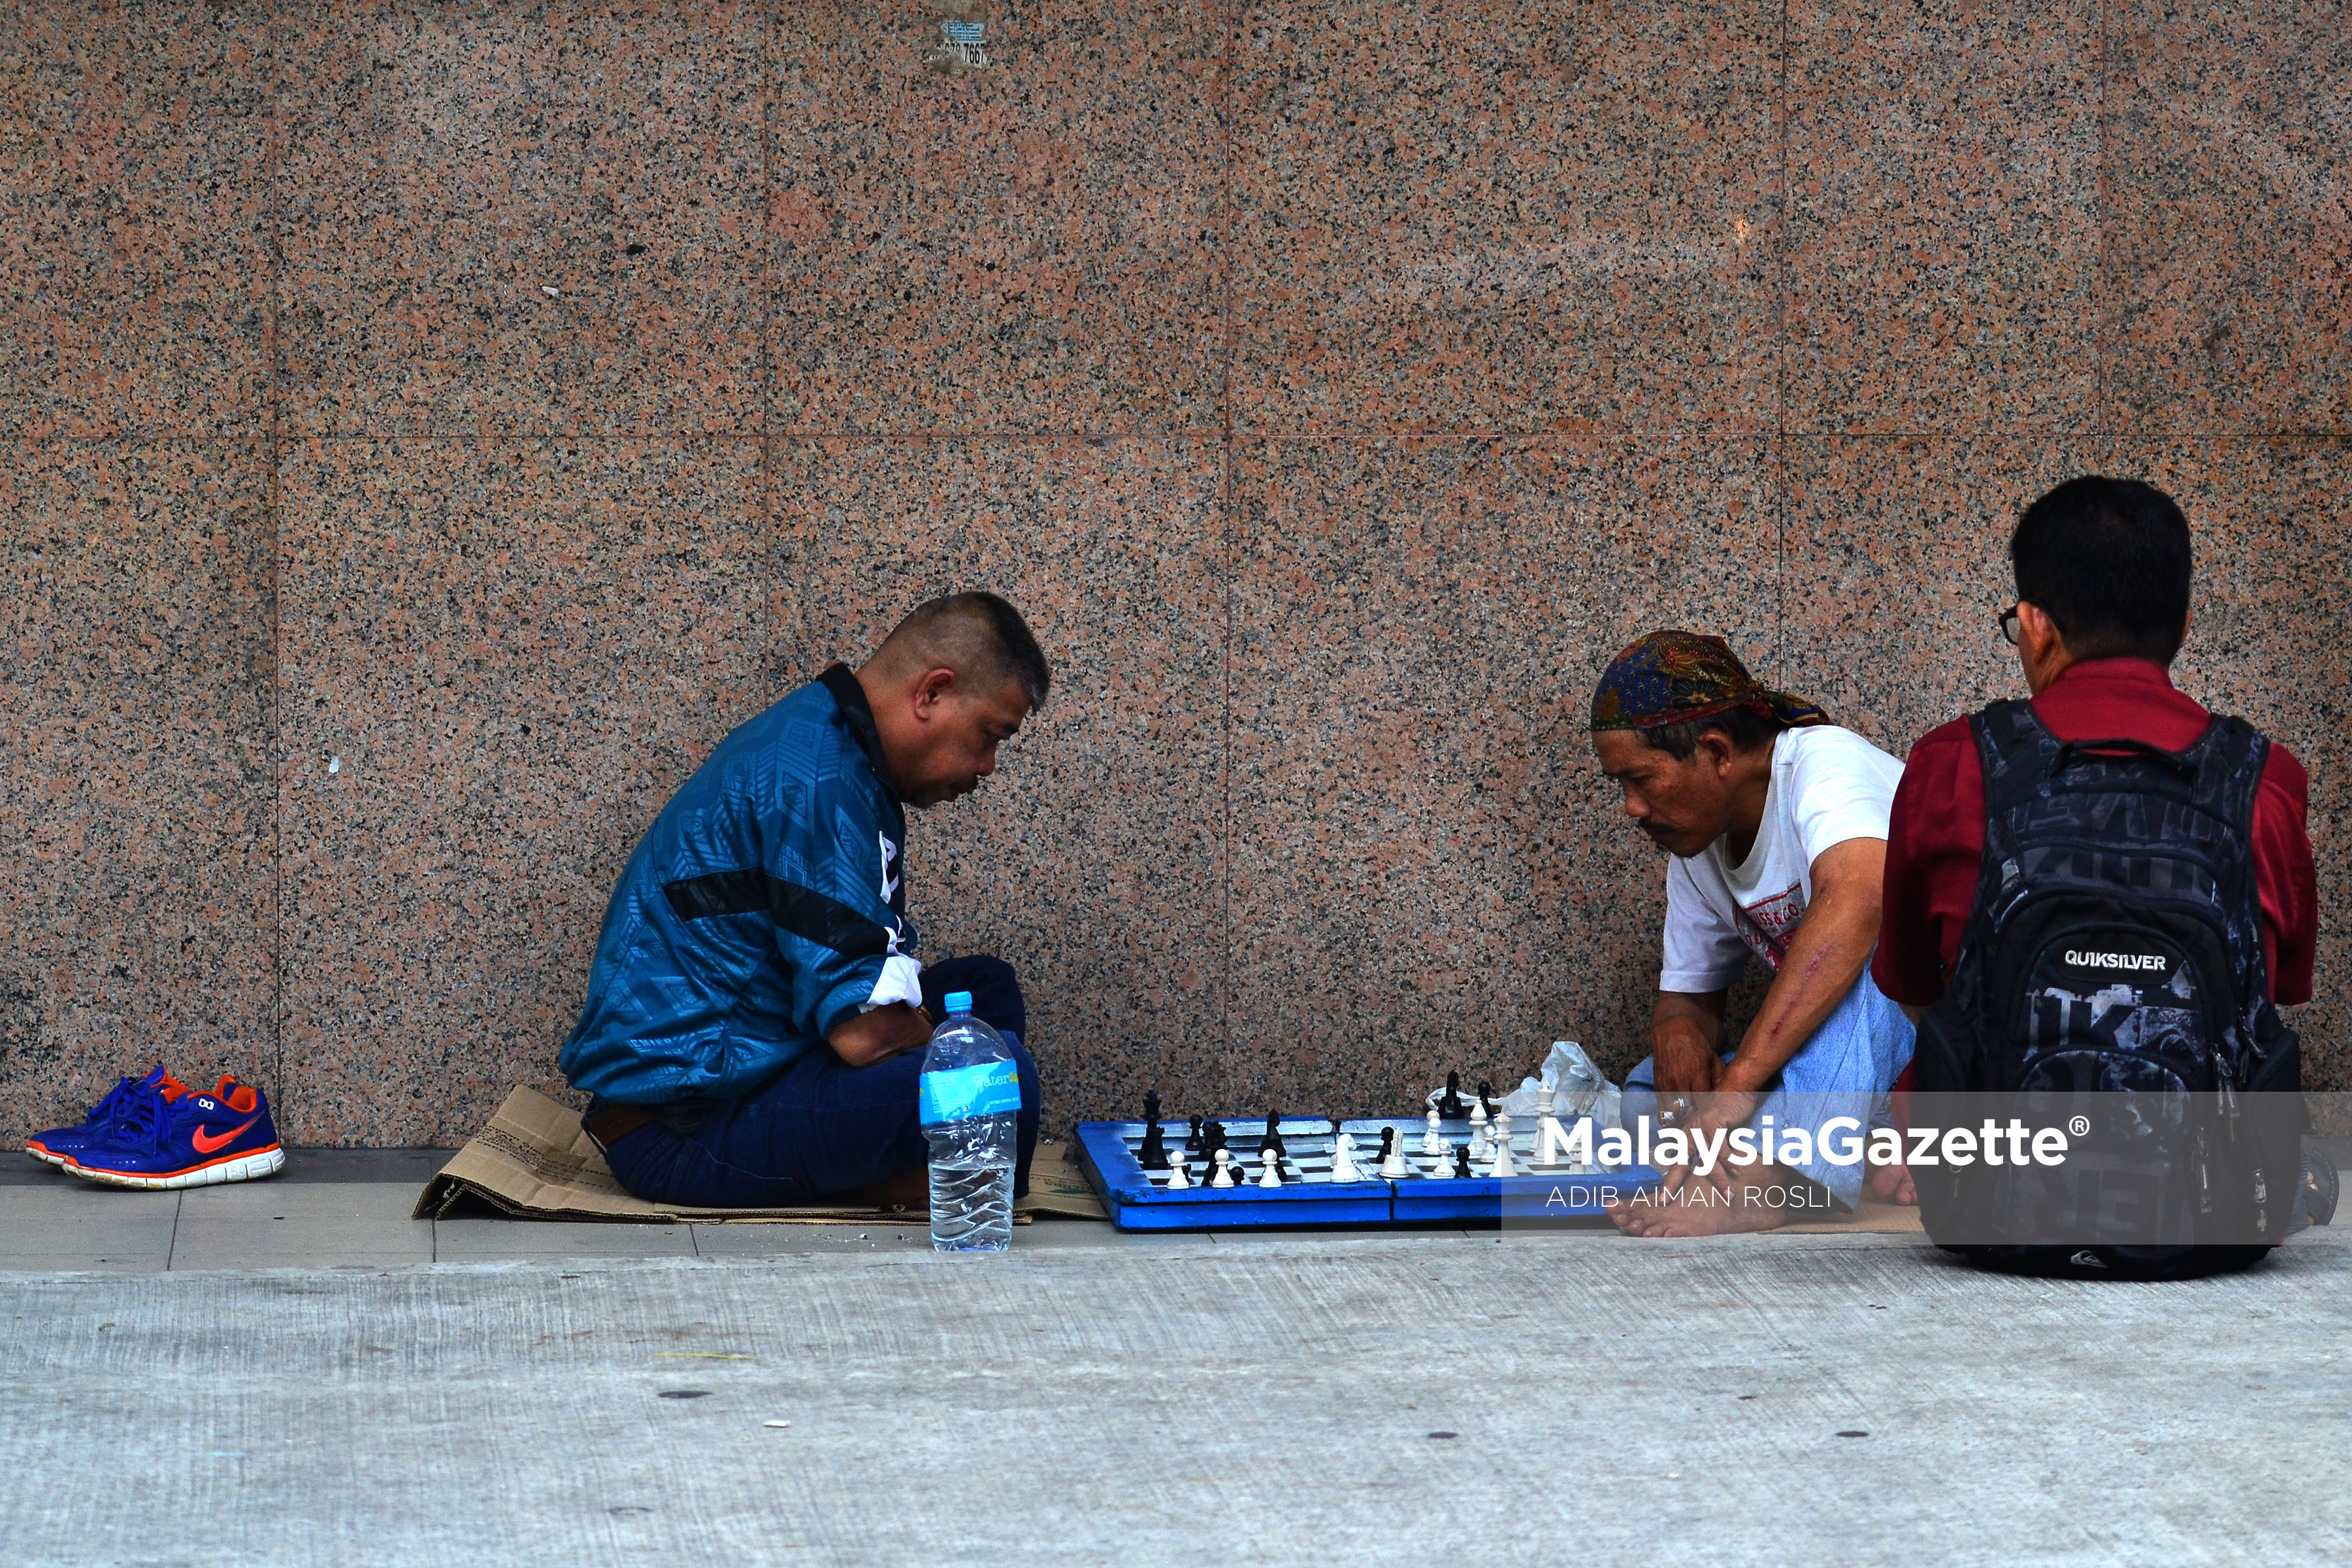 Gelagat tiga orang lelaki bermain catur di kawasan kaki lima ketika tinjauan lensa Malaysia Gazette sempena cuti umum Hari Wilayah Persekutuan di Jalan Chow Kit, Kuala Lumpur. foto ADIB AIMAN ROSLI, 01 FEBRUARI 2017